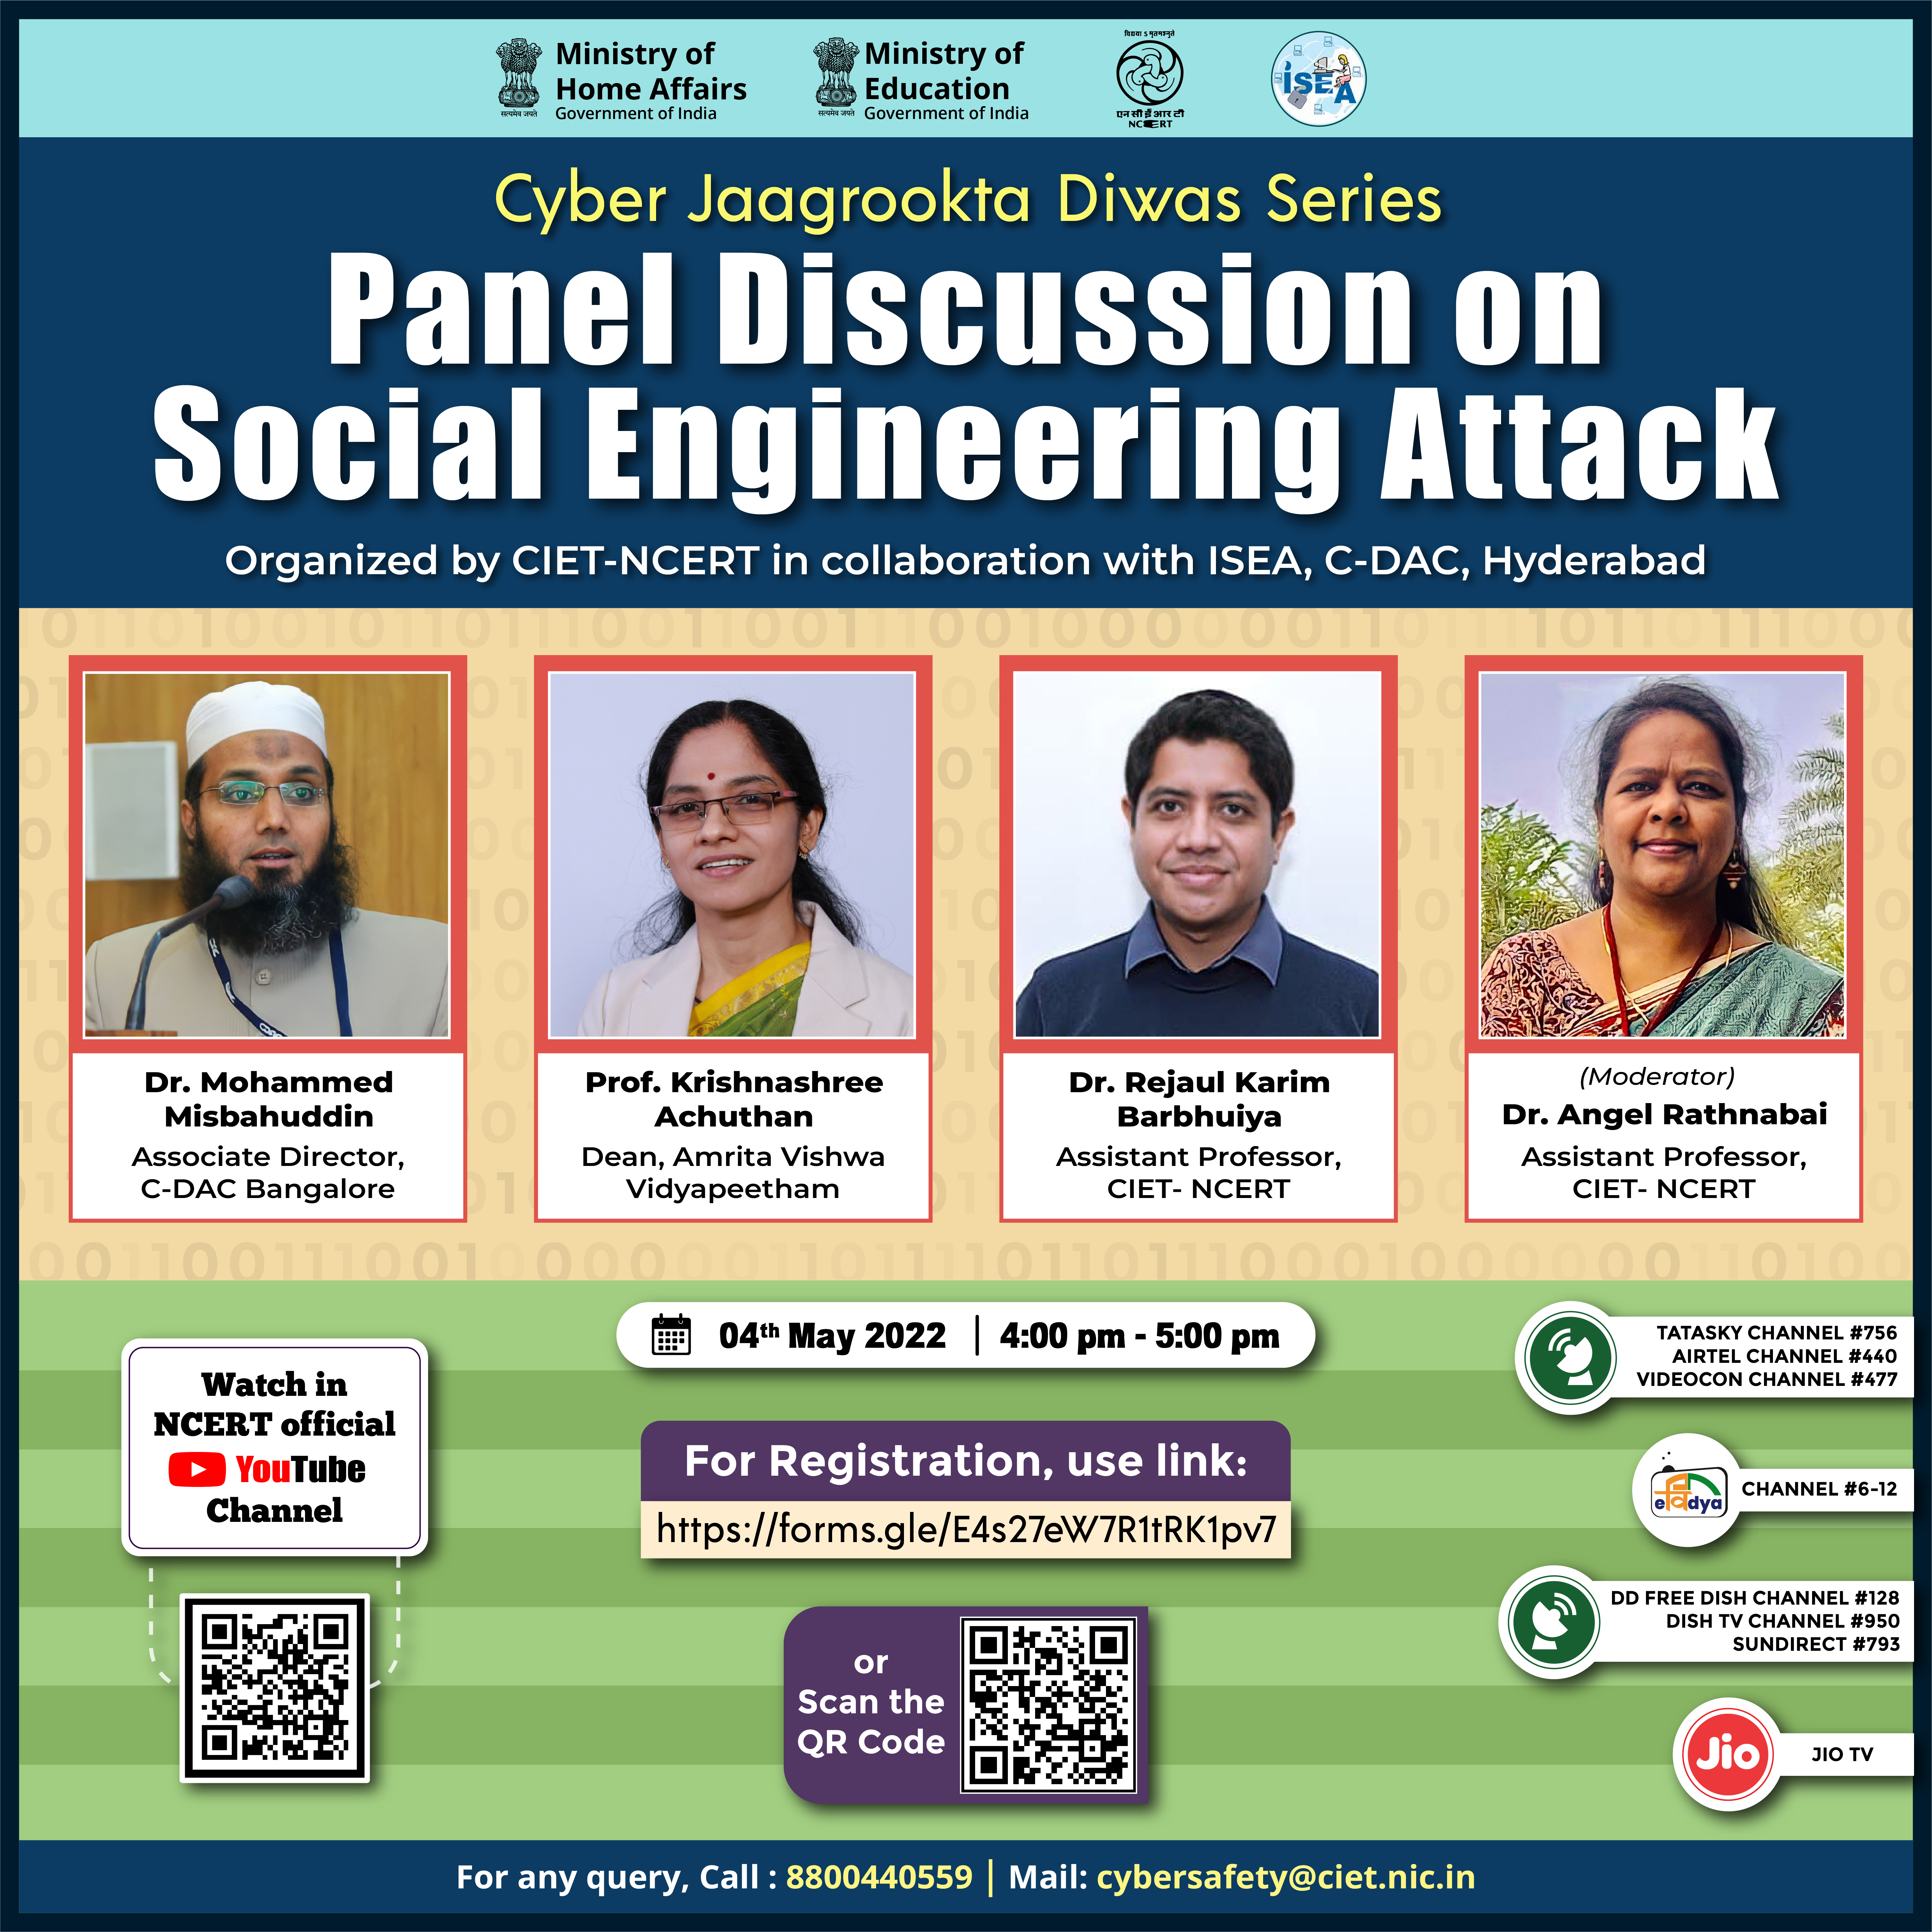 Cyber Jaagrookta Diwas Series : Social Engineering Attacks Image